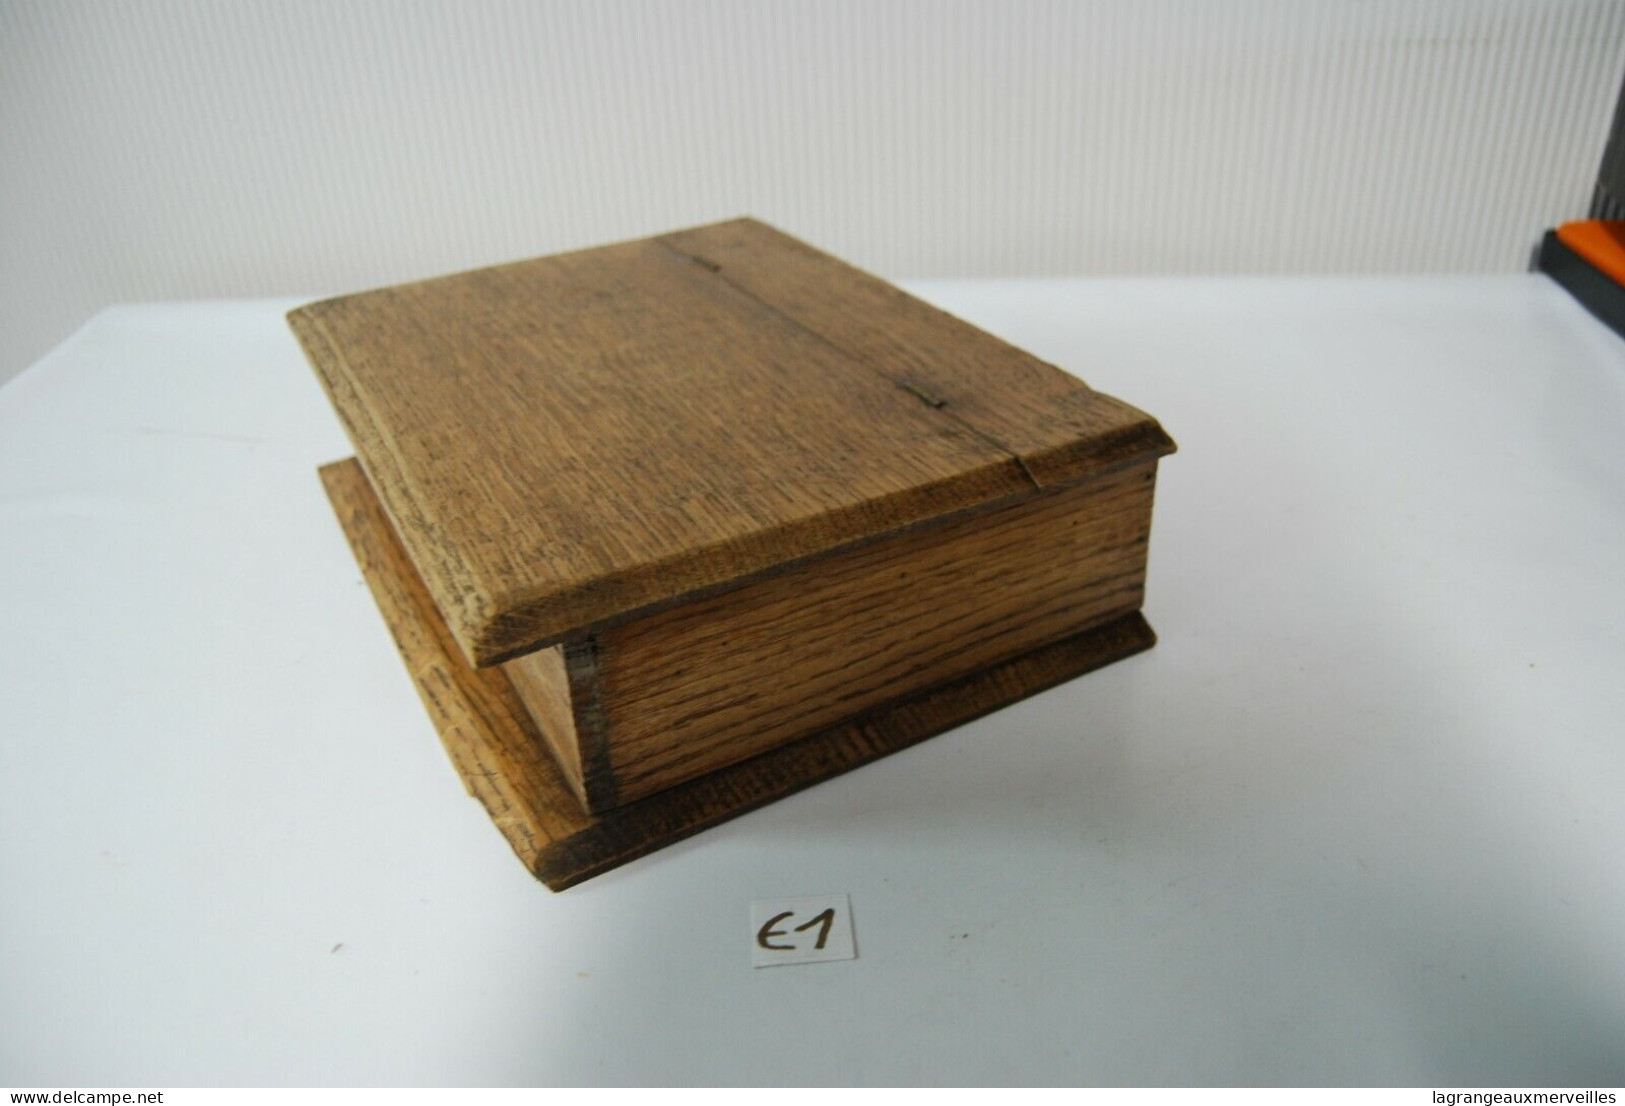 E1 Ancienne boite en bois - Administration France - Notaire